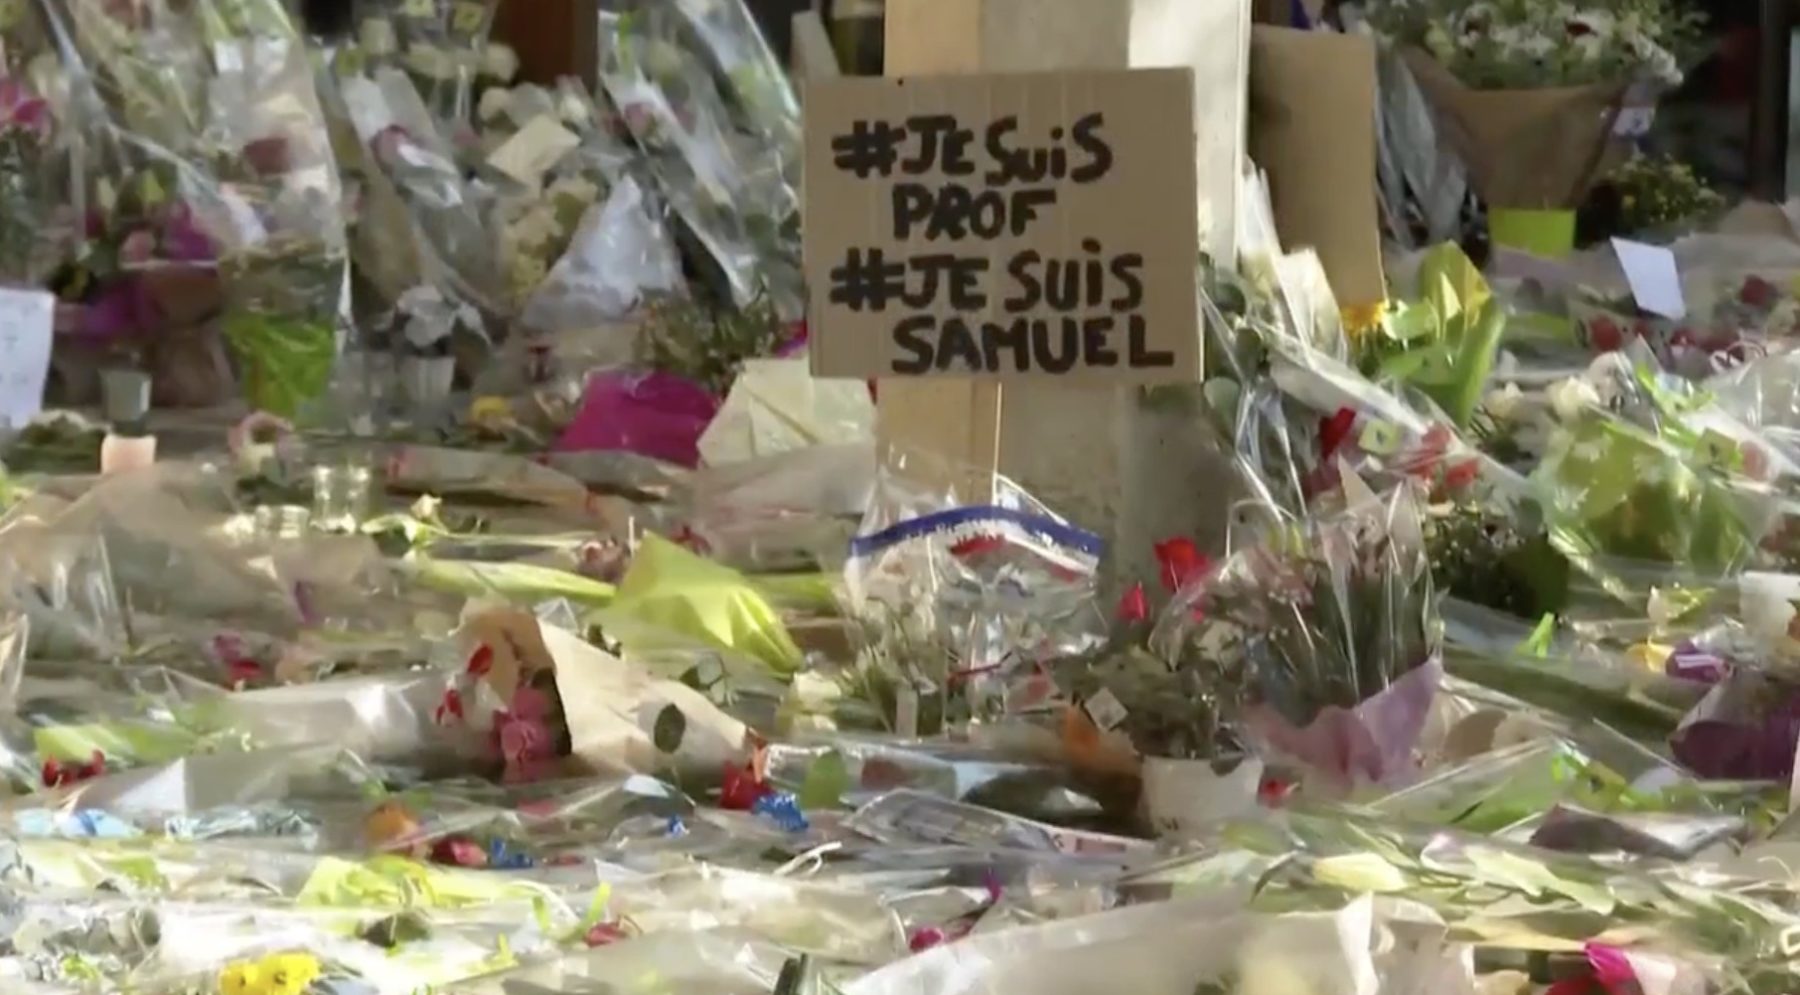 Hommage au professeur assassiné fleurs #je suis prof#JE SUIS Samuel